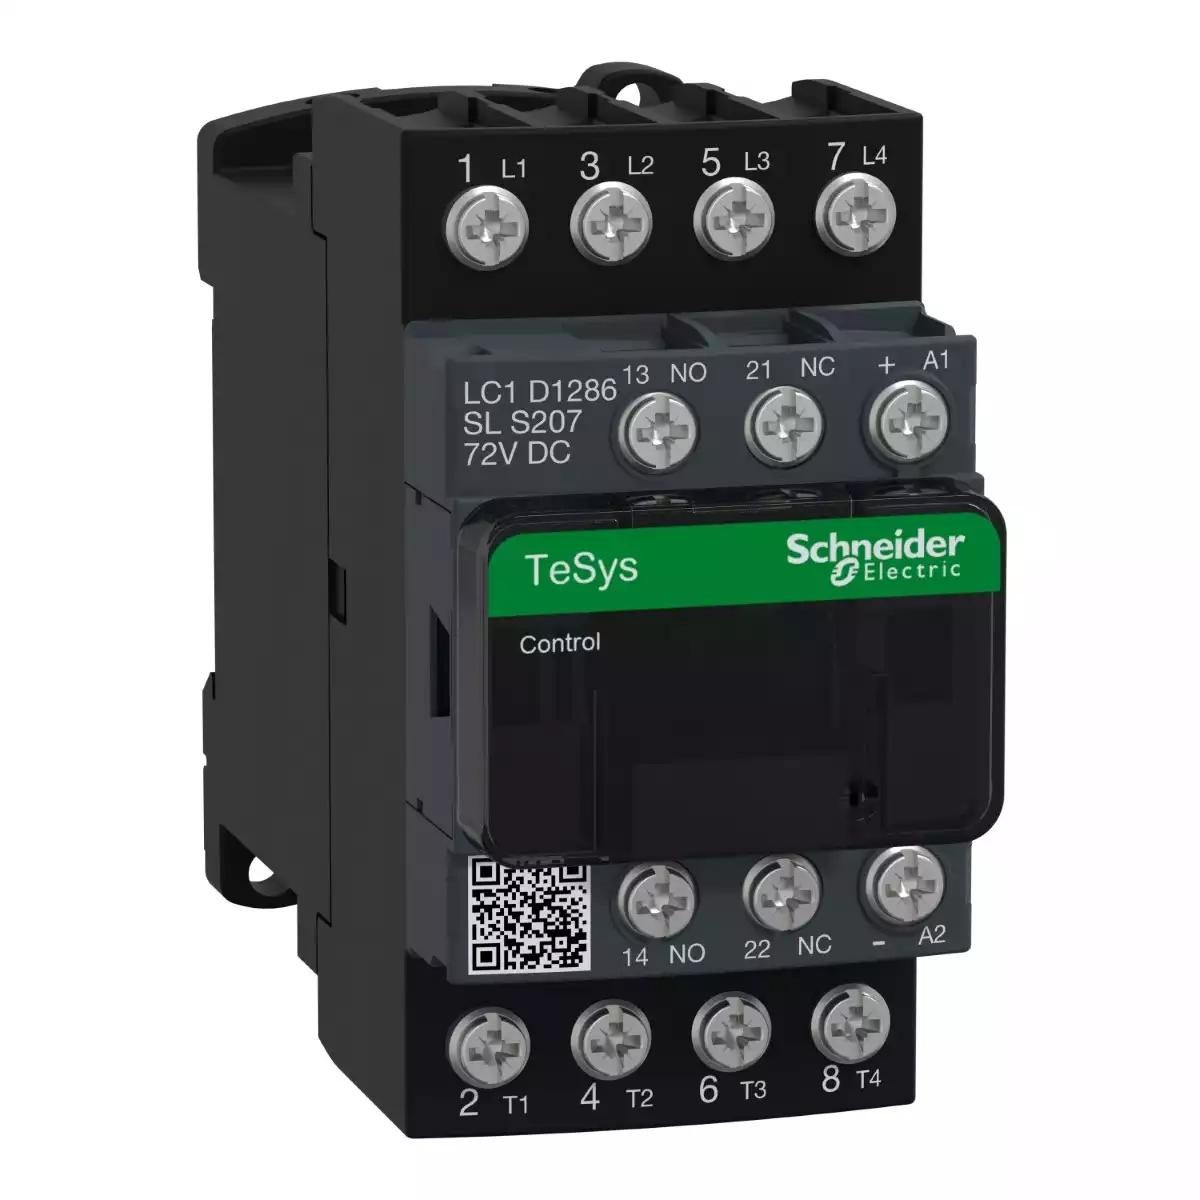 TeSys D contactor S207 - 4P (2NO+2NC) AC-1 25A <=440V - coil 72V DC low